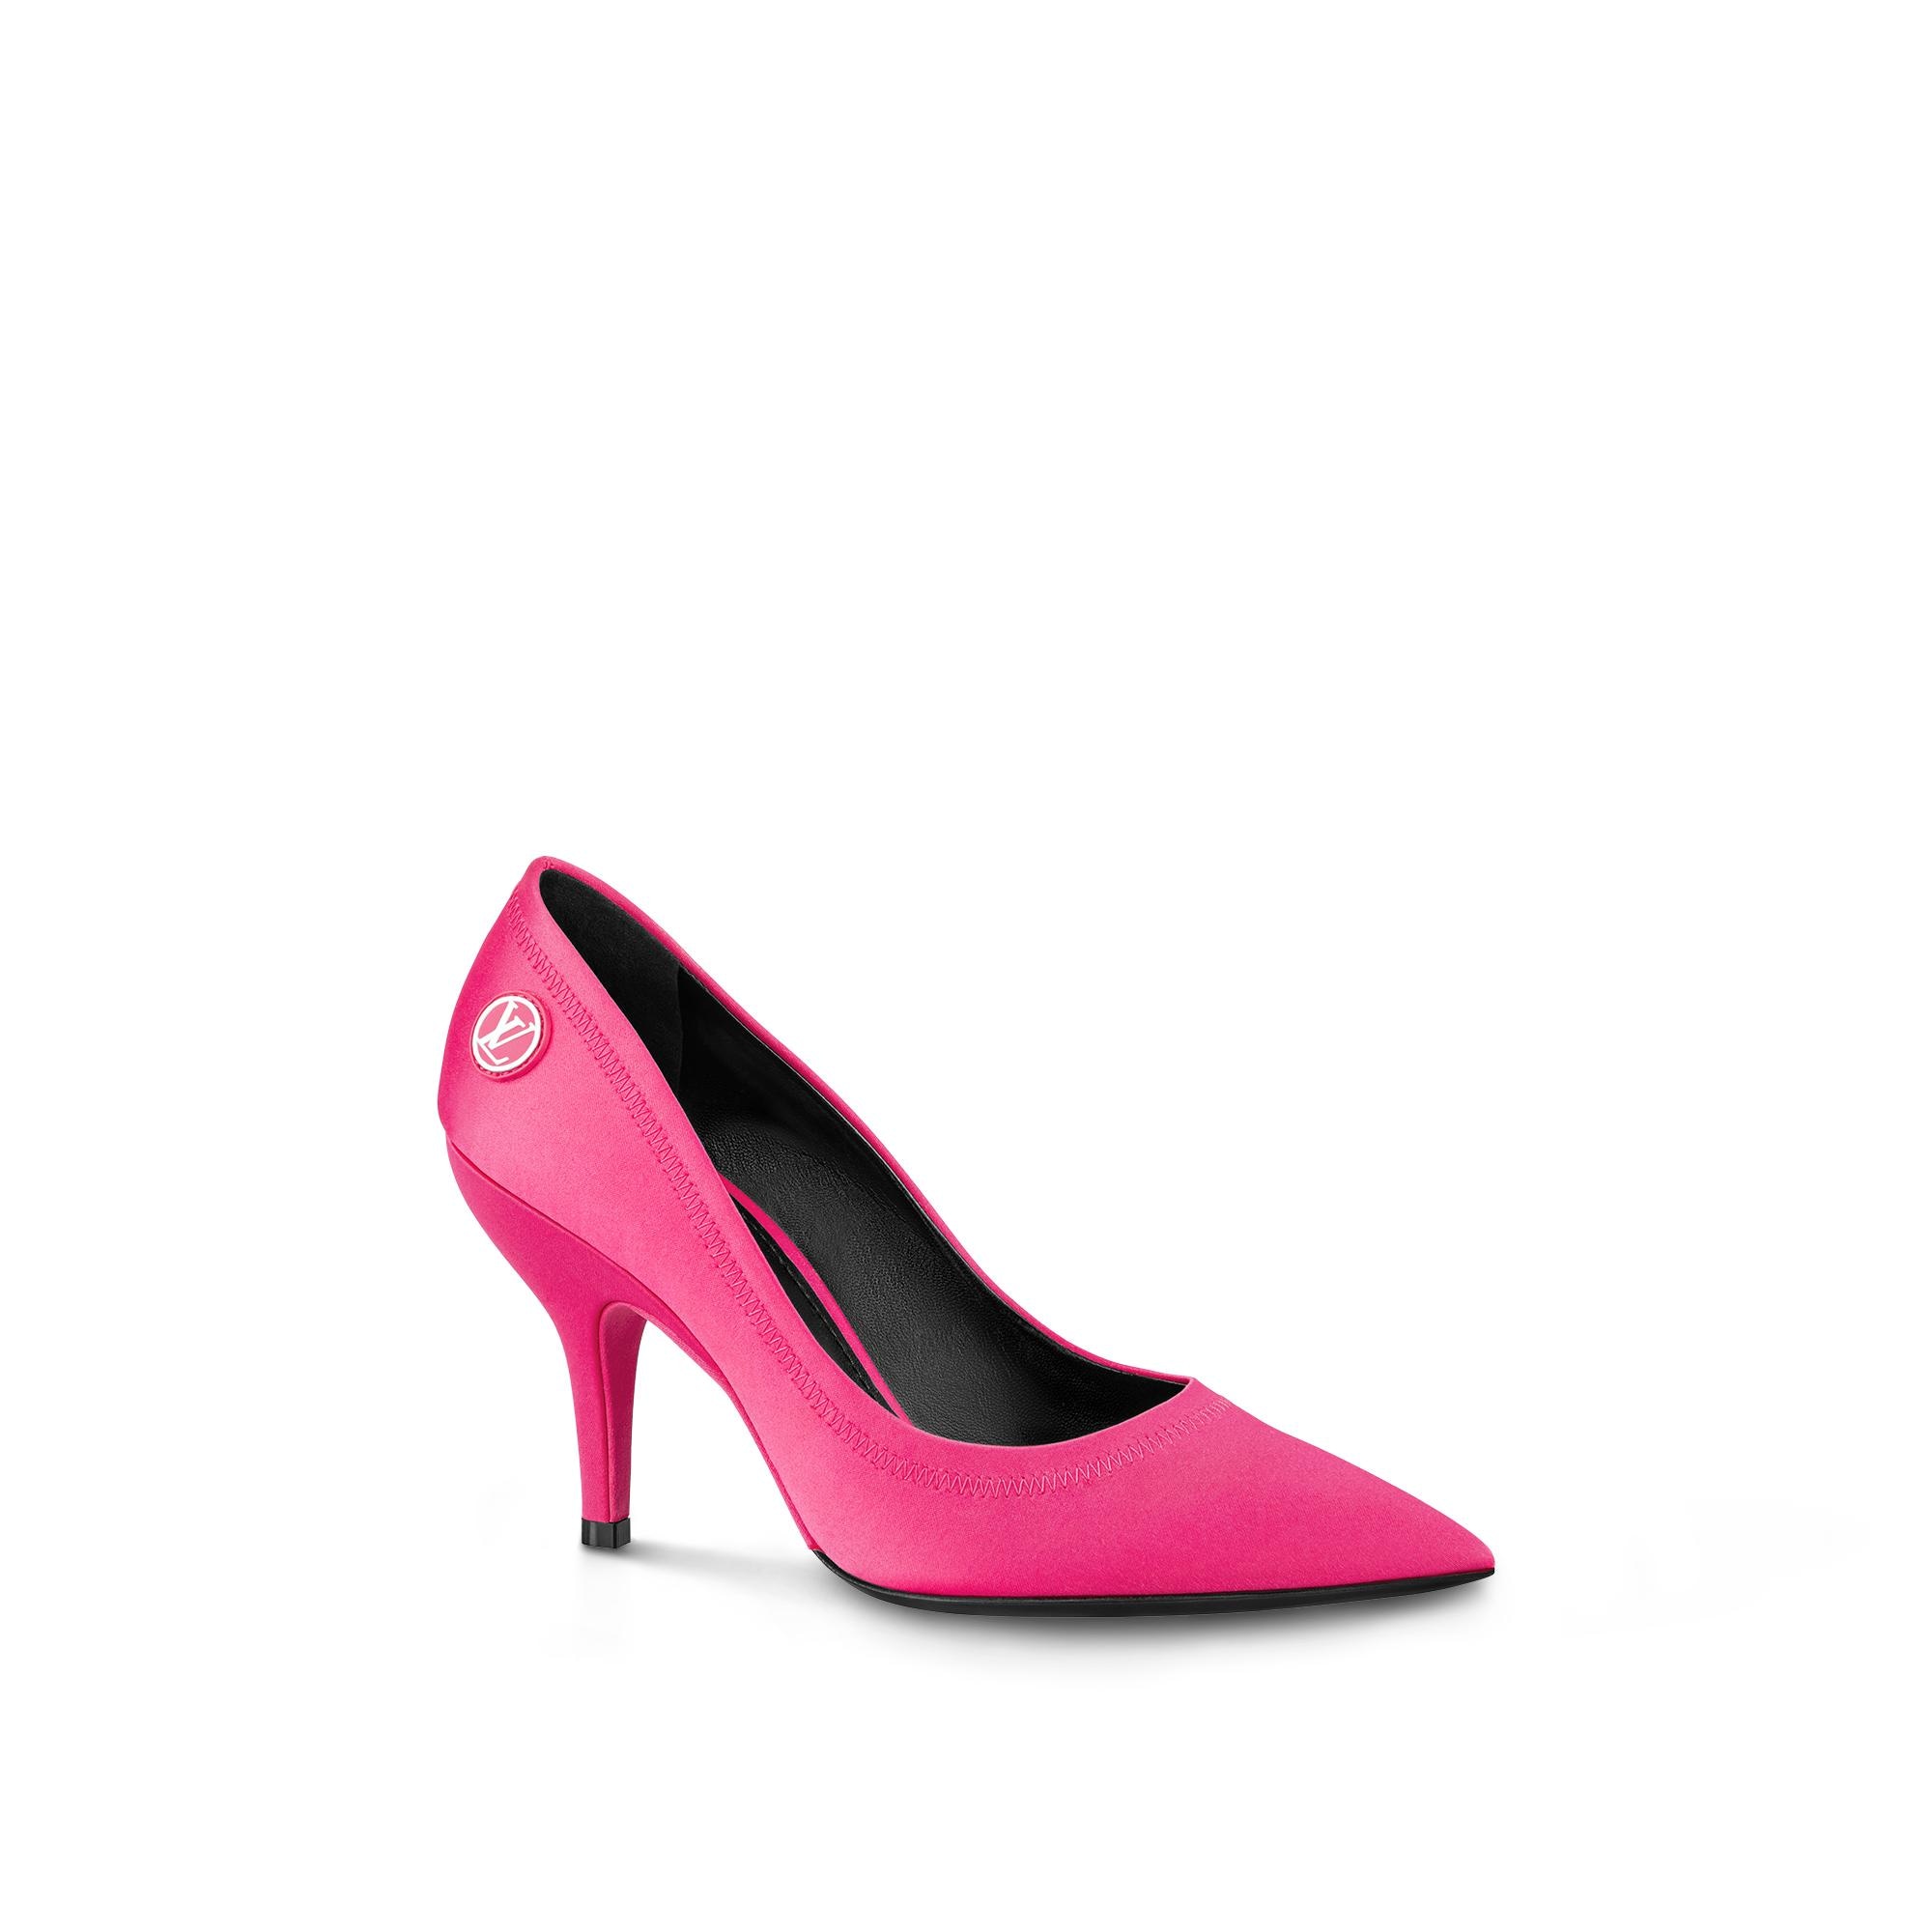 Louis Vuitton Archlight Pump – WOMEN – Shoes 1A9RGZ